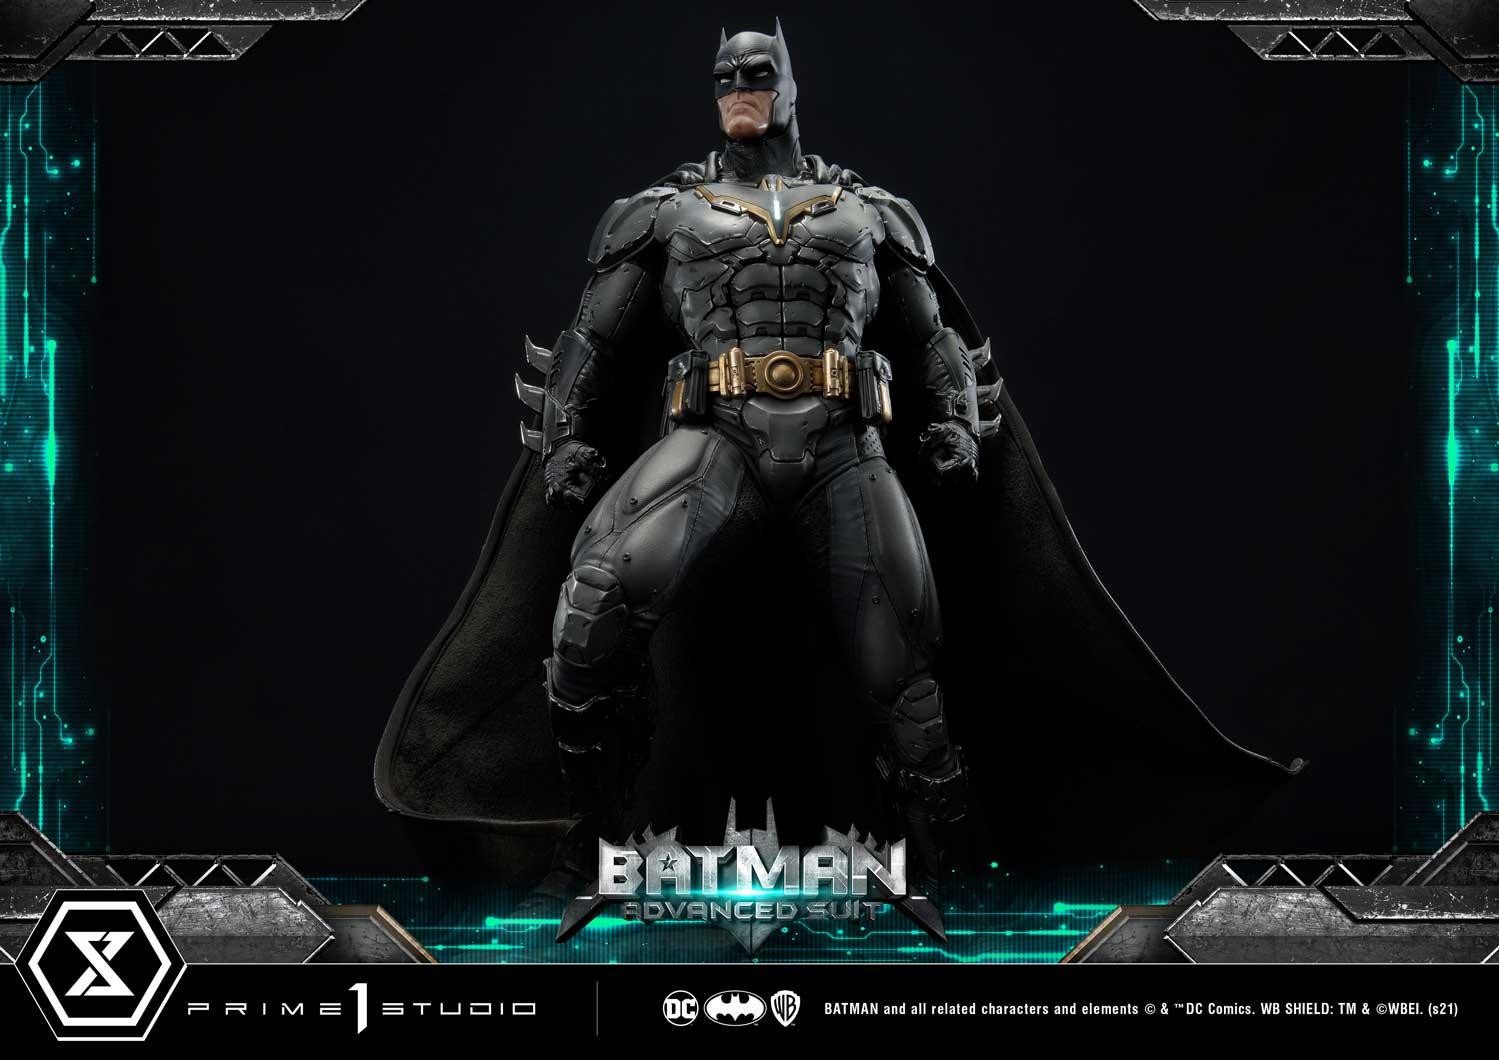 P1S超级霸气蝙蝠侠升级版战衣与芬里尔装甲套装 售价2999美元